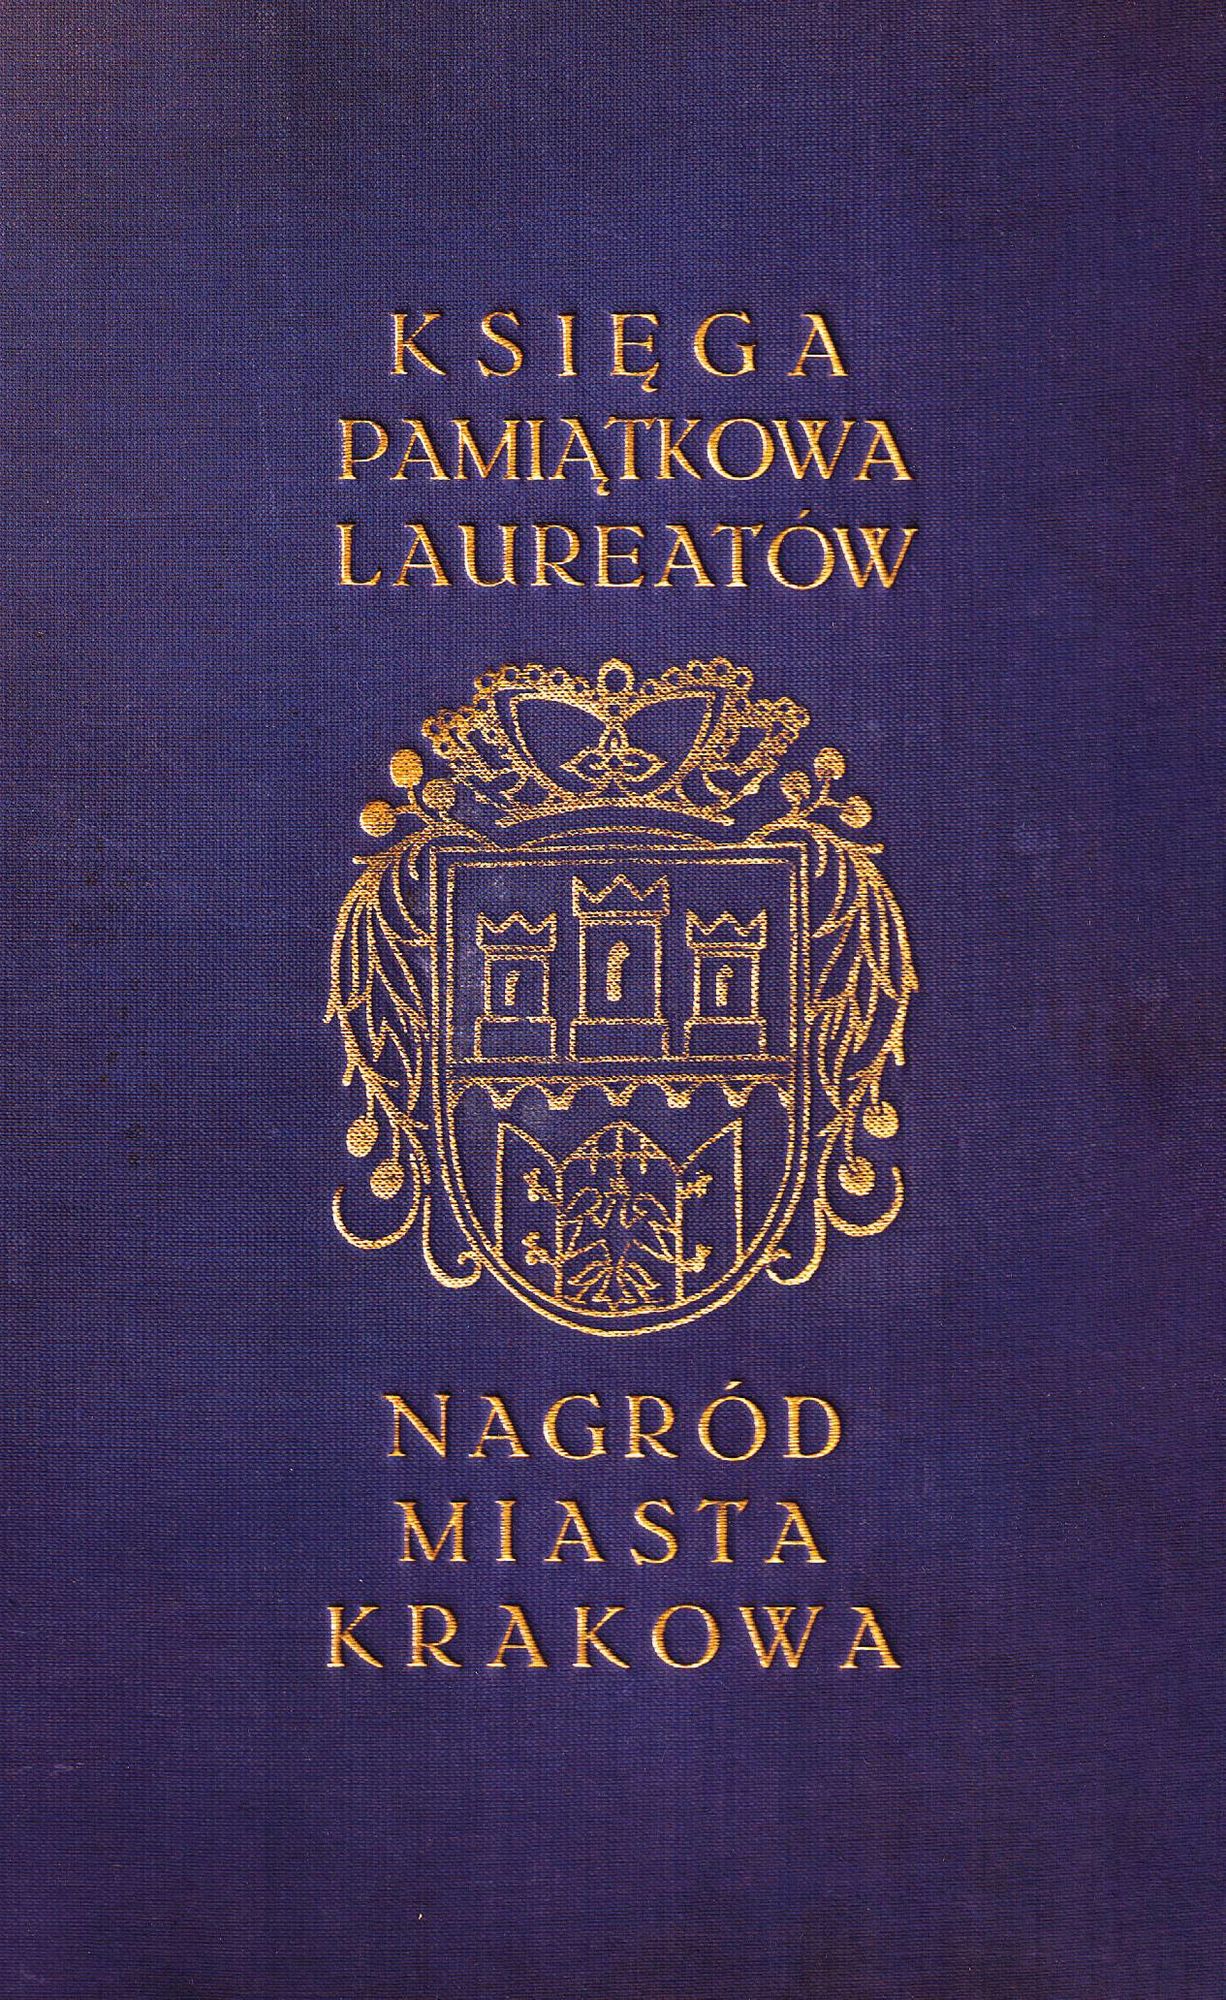 (473) Rok 1961 – okładzina Księgi pamiątkowej laureatów Nagród Miasta Krakowa z lat 1961–1971, z uzupełnieniami sięgającymi roku 1945;
liternictwo i grafika tłoczone, z pozłotką (AZ UMK, spis 301/1)